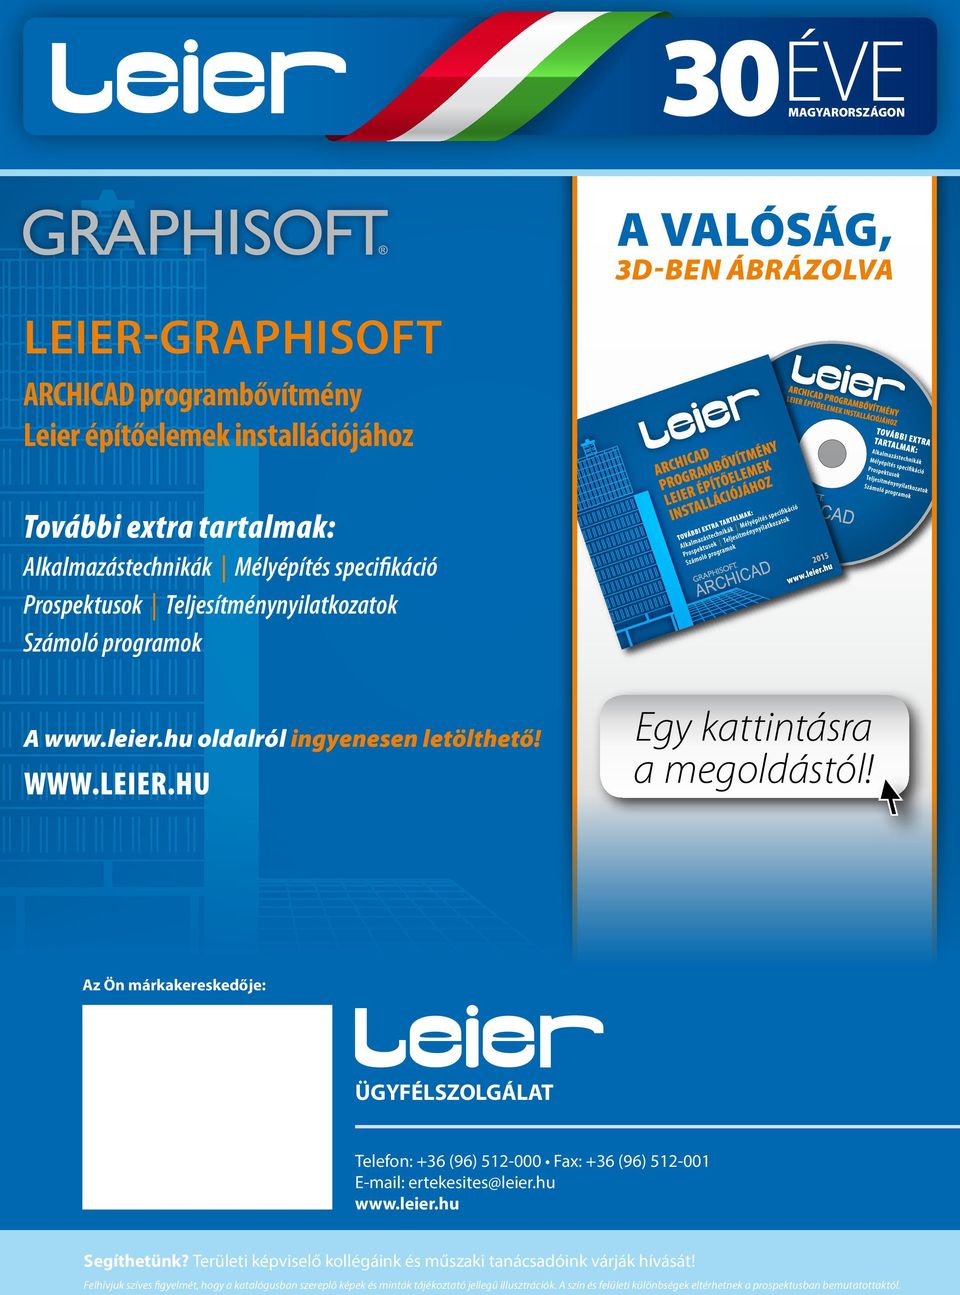 Az Ön márkakereskedője: ÜGYFÉLSZOLGÁLAT Telefon: +36 (96) 512-000 Fax: +36 (96) 512-001 E-mail: ertekesites@leier.hu www.leier.hu Segíthetünk?